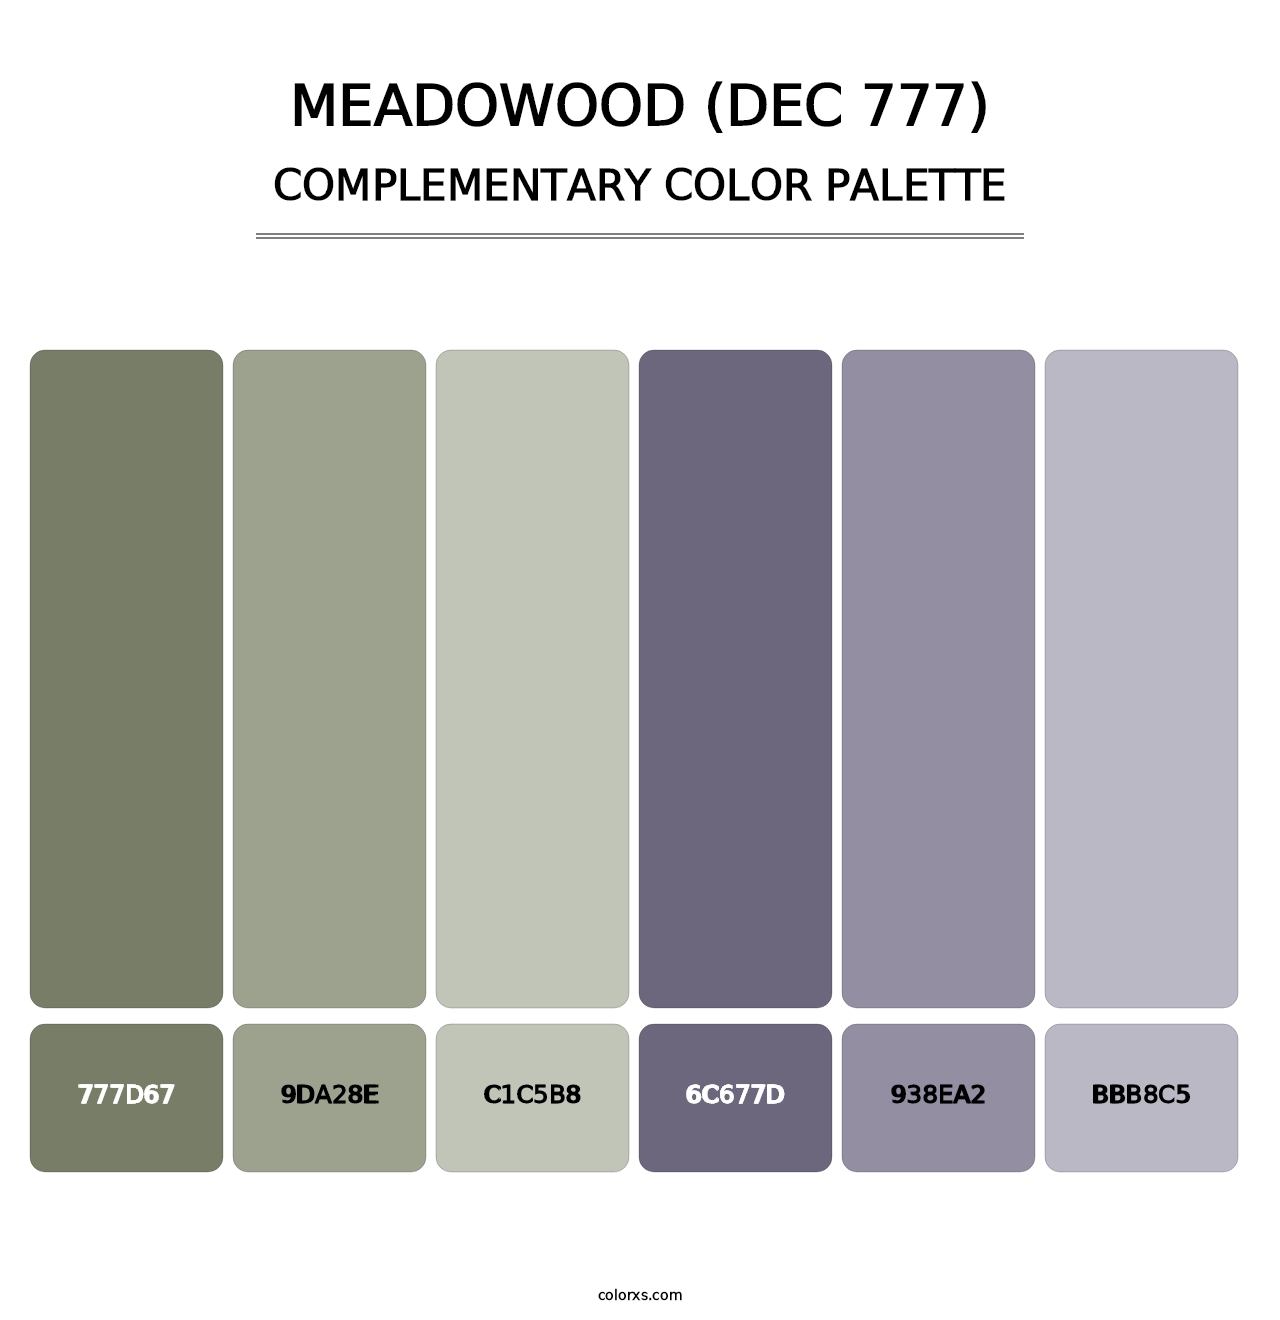 Meadowood (DEC 777) - Complementary Color Palette